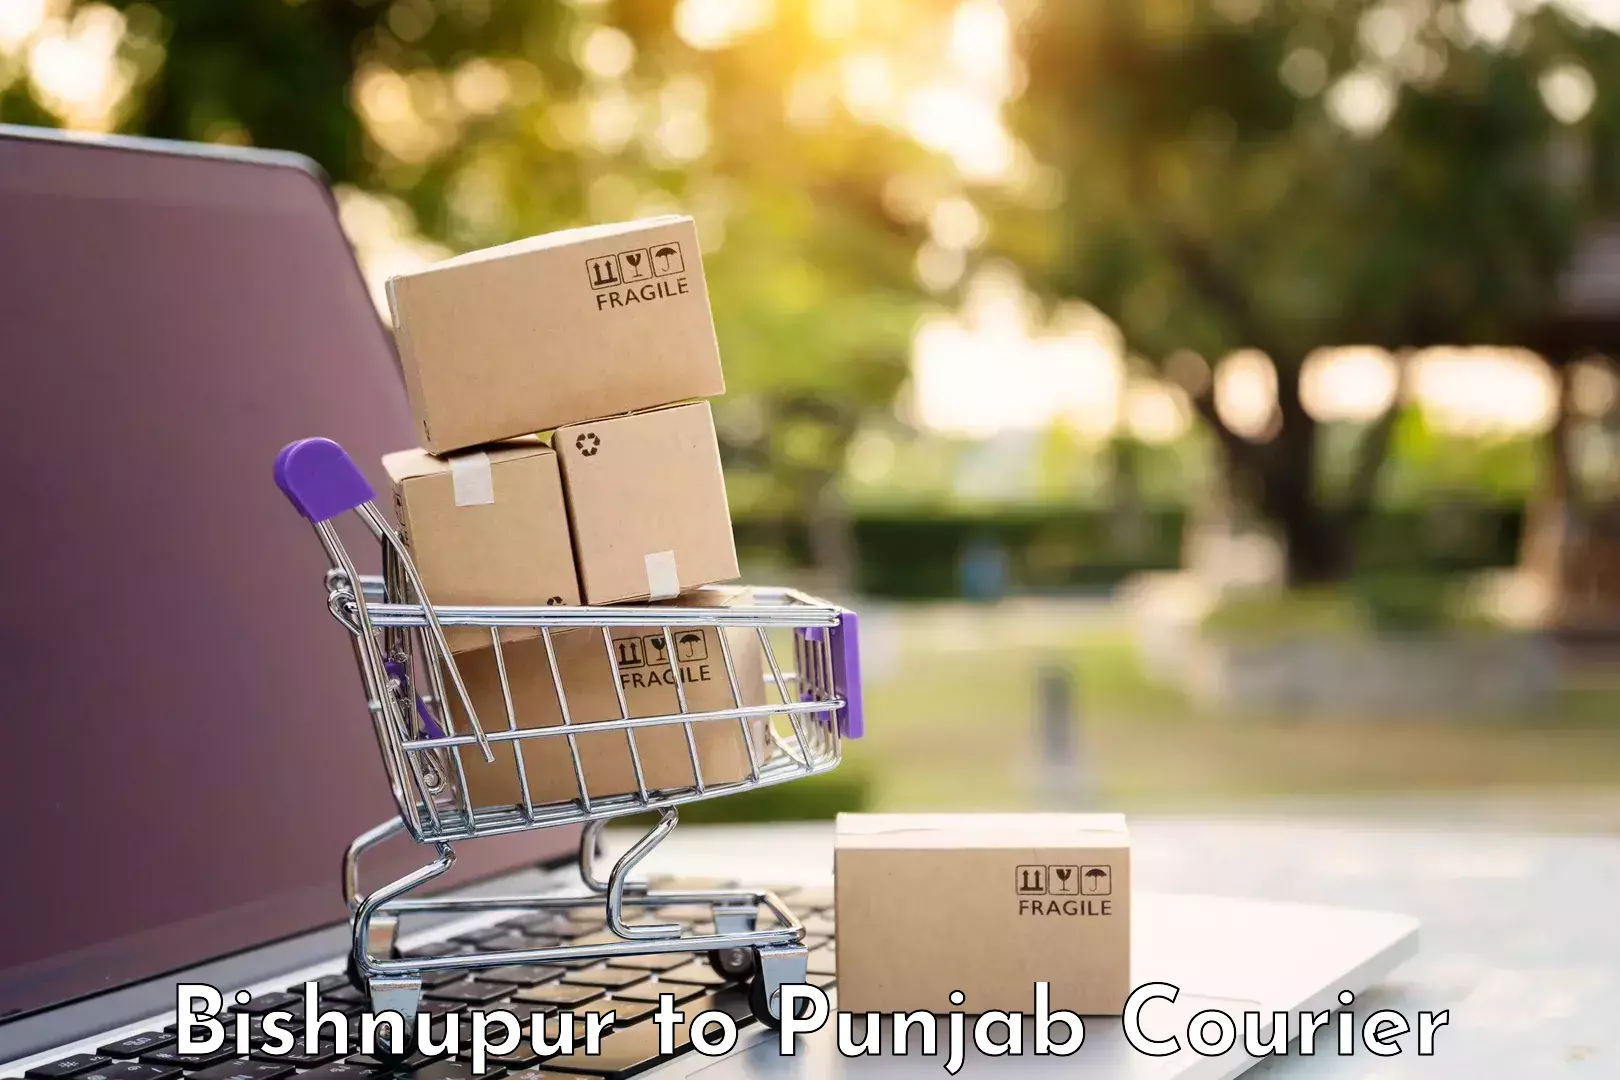 Luggage delivery estimate Bishnupur to Ludhiana